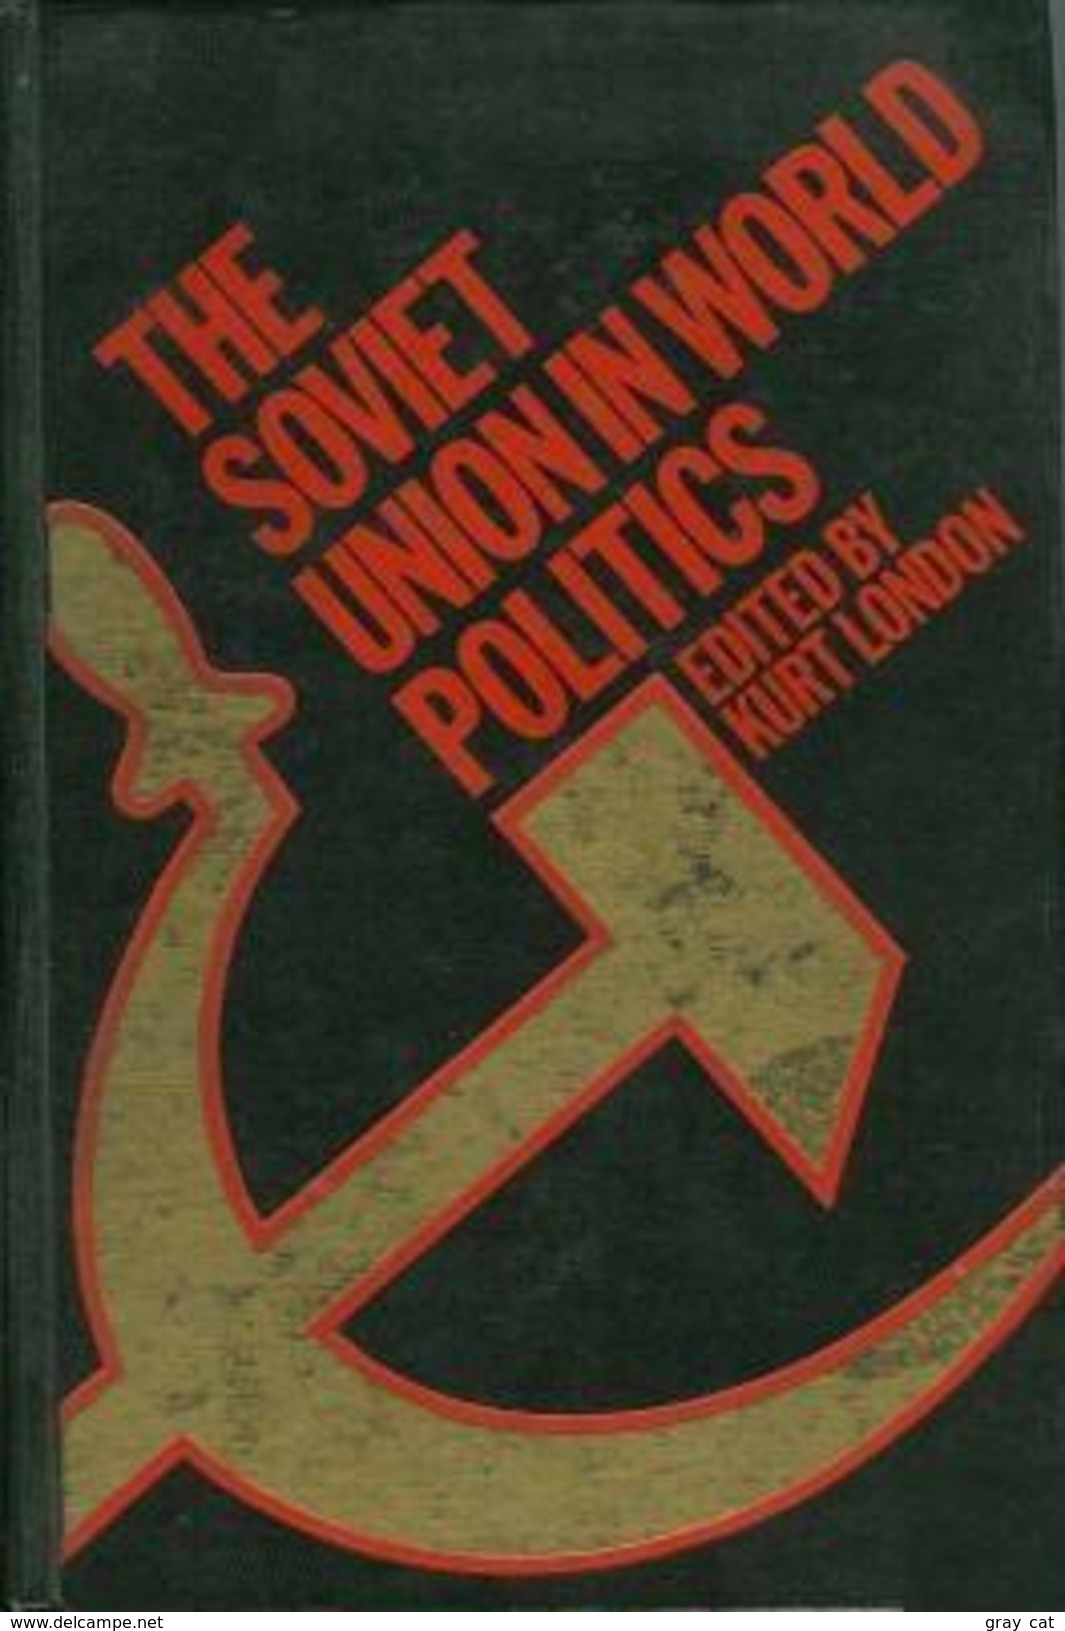 The Soviet Union In World Politics By Kurt London (ISBN 9780891582632) - Europe